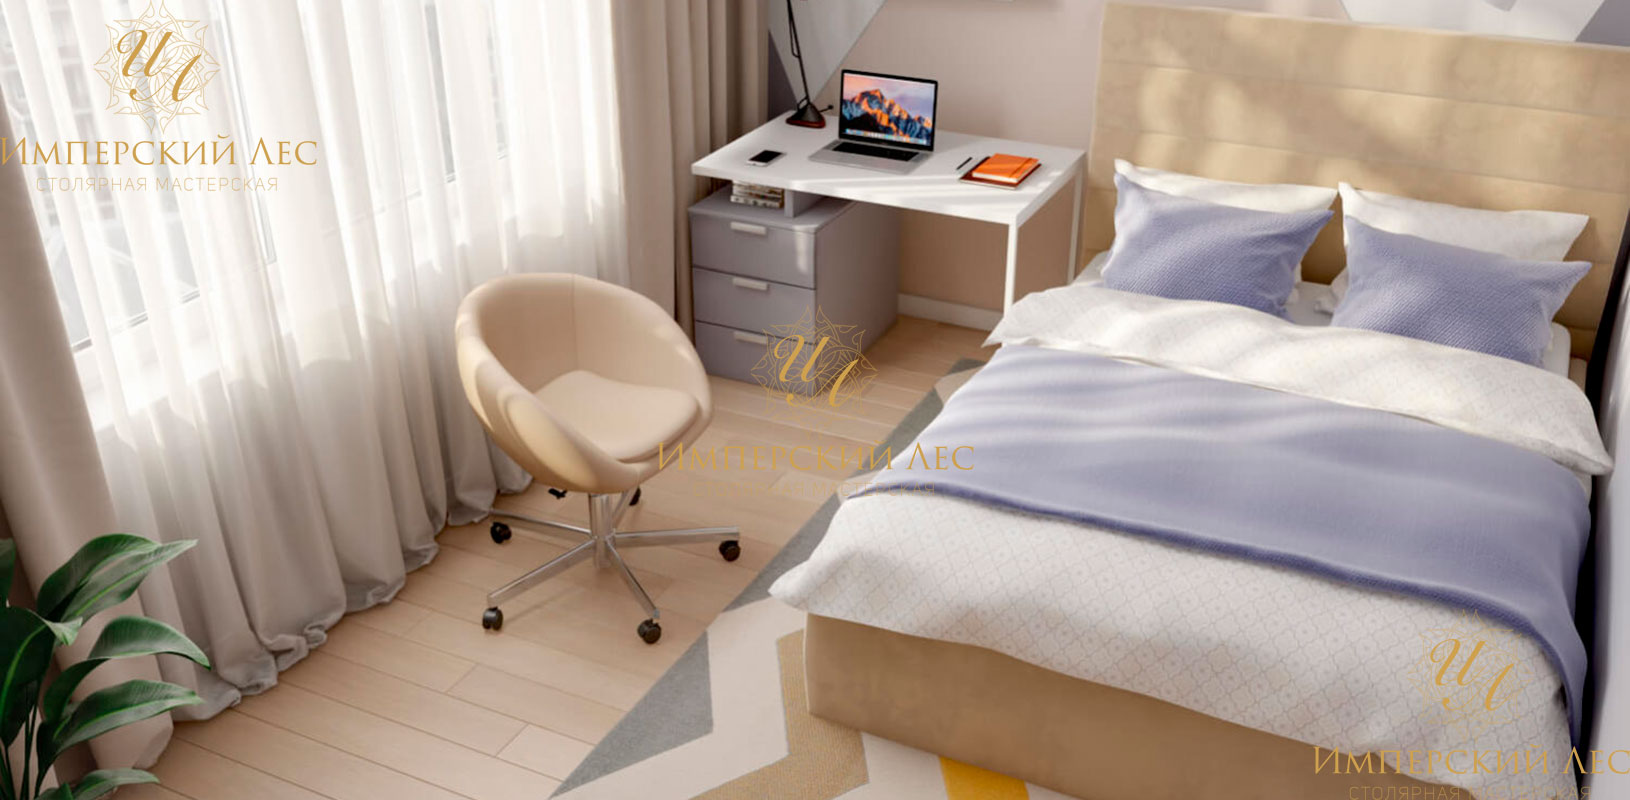 Дизайнерская кровать IW Uno для детской комнаты